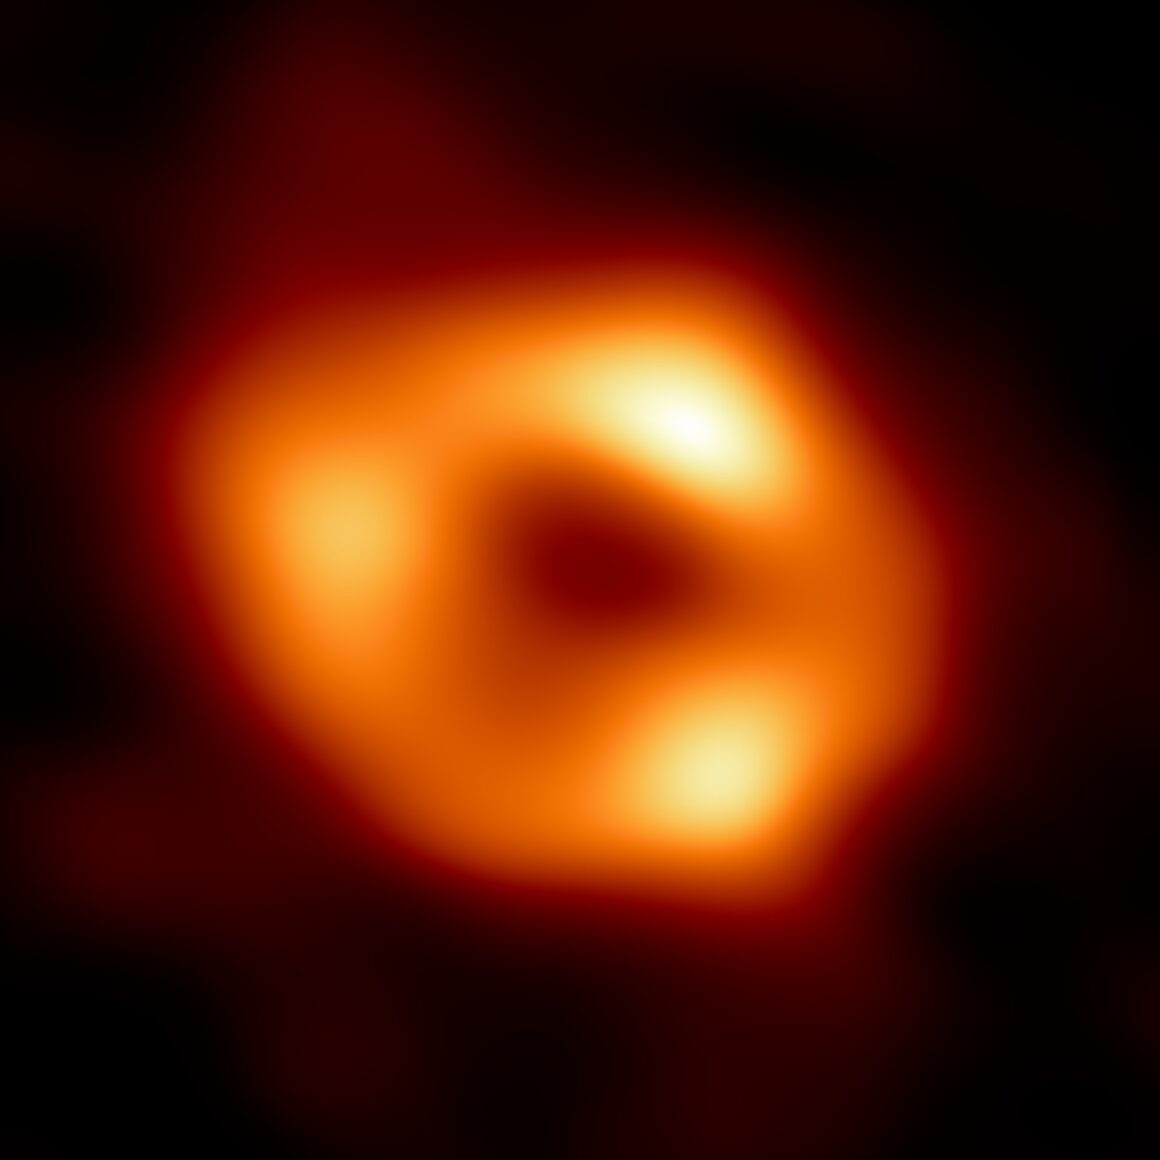 Η Αστρονομία γράφει Ιστορία: Η πρώτη φωτογραφία της μαύρης τρύπας του Γαλαξία μας που είχε προβλέψει ο Αϊνστάιν